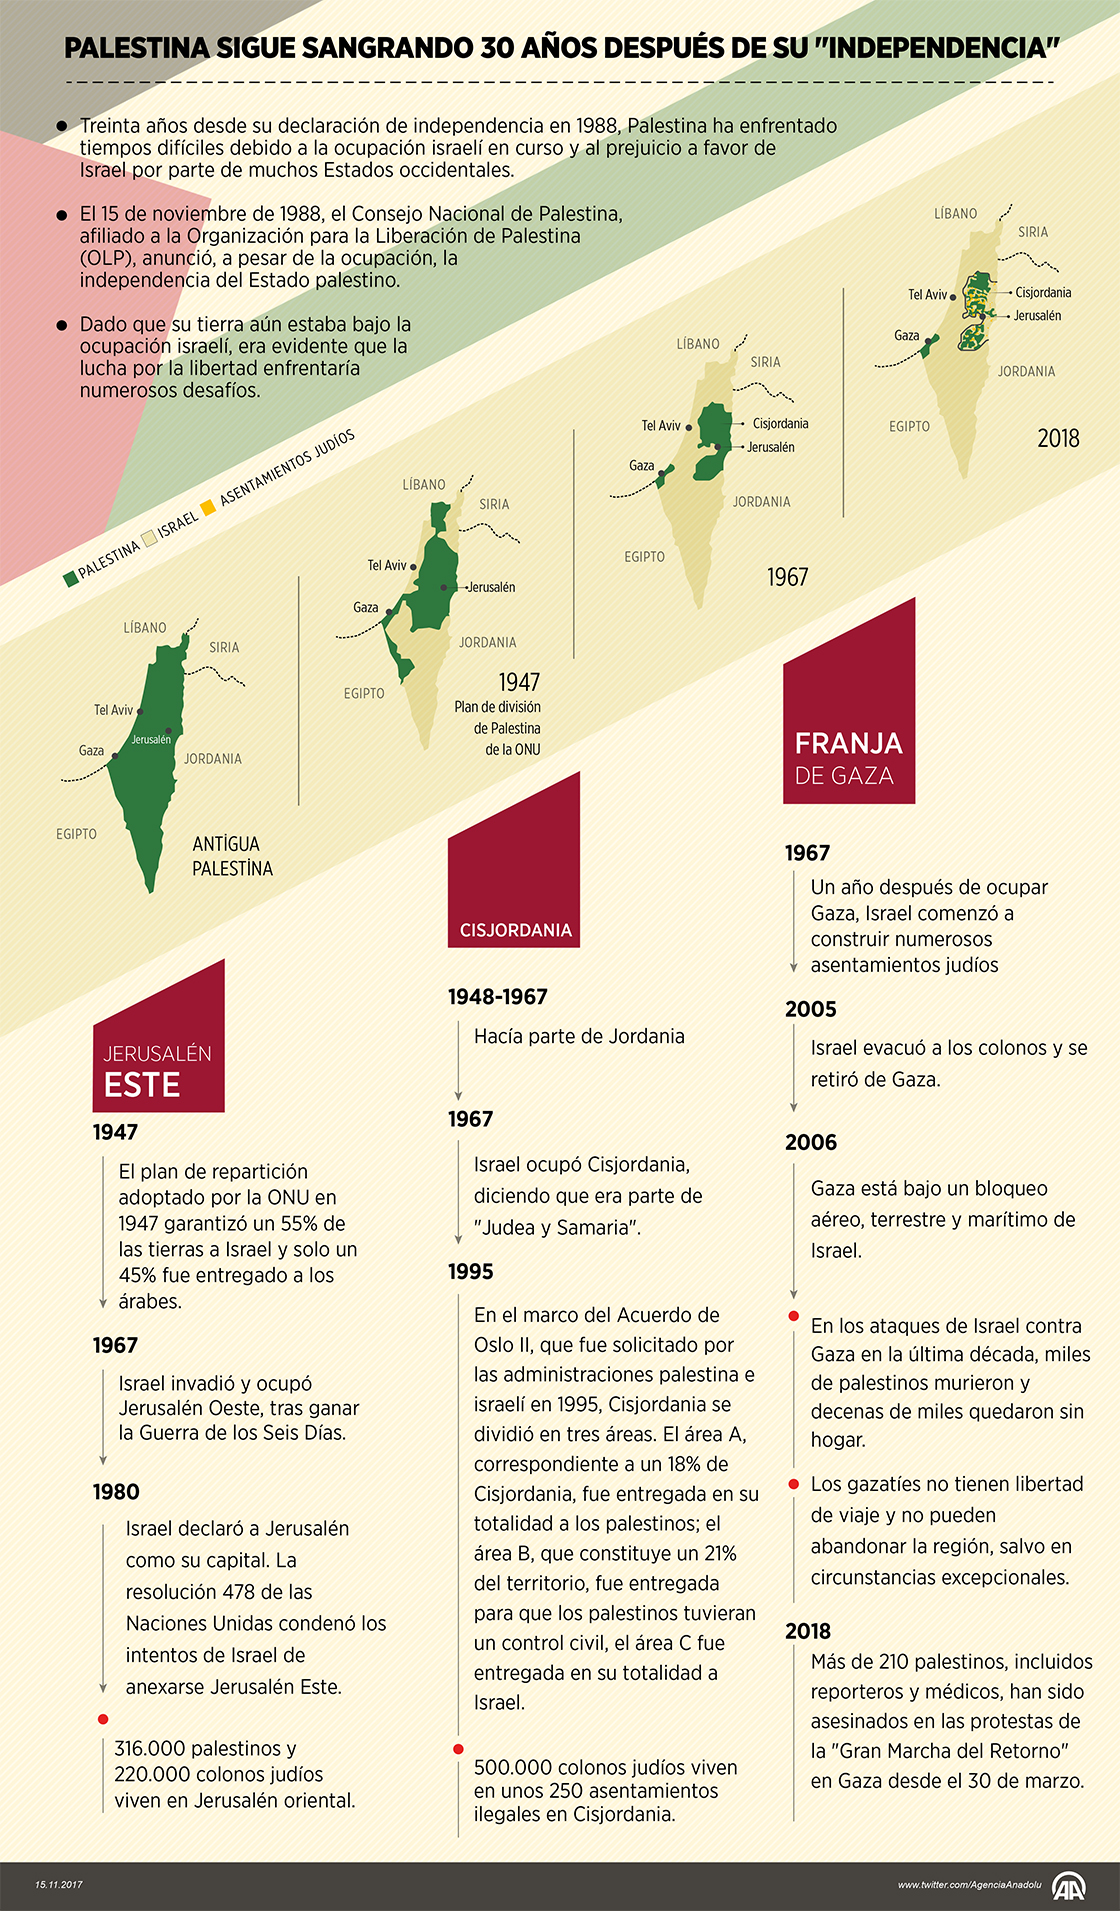 Palestina sigue sangrando 30 años después de su "independencia"